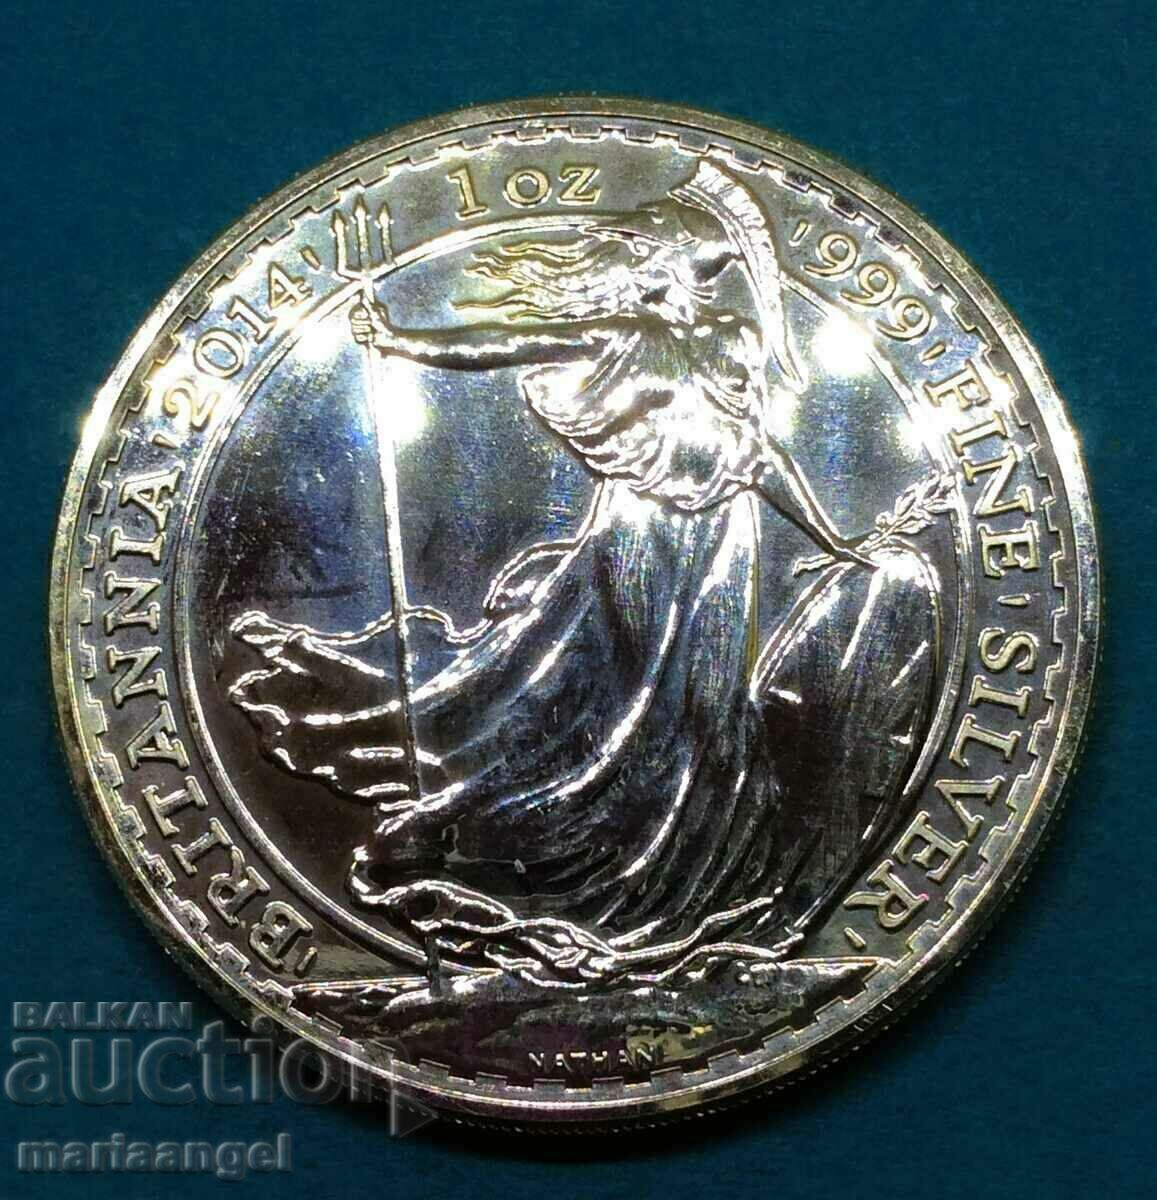 Great Britain 1 oz 1999 Elizabeth II Britain Silver